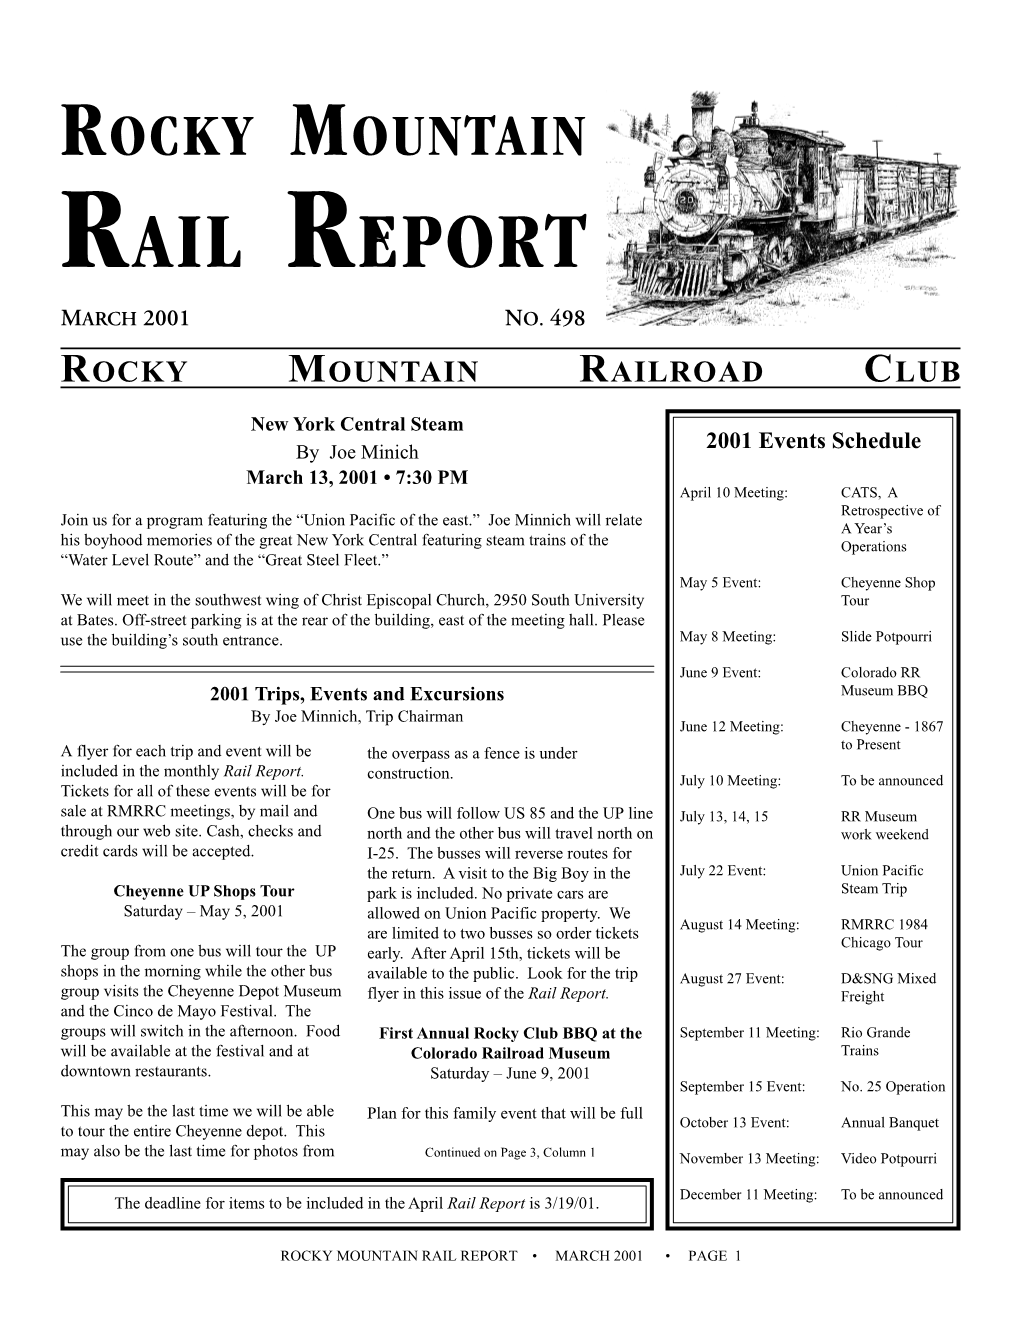 Rail Report March 2001 No